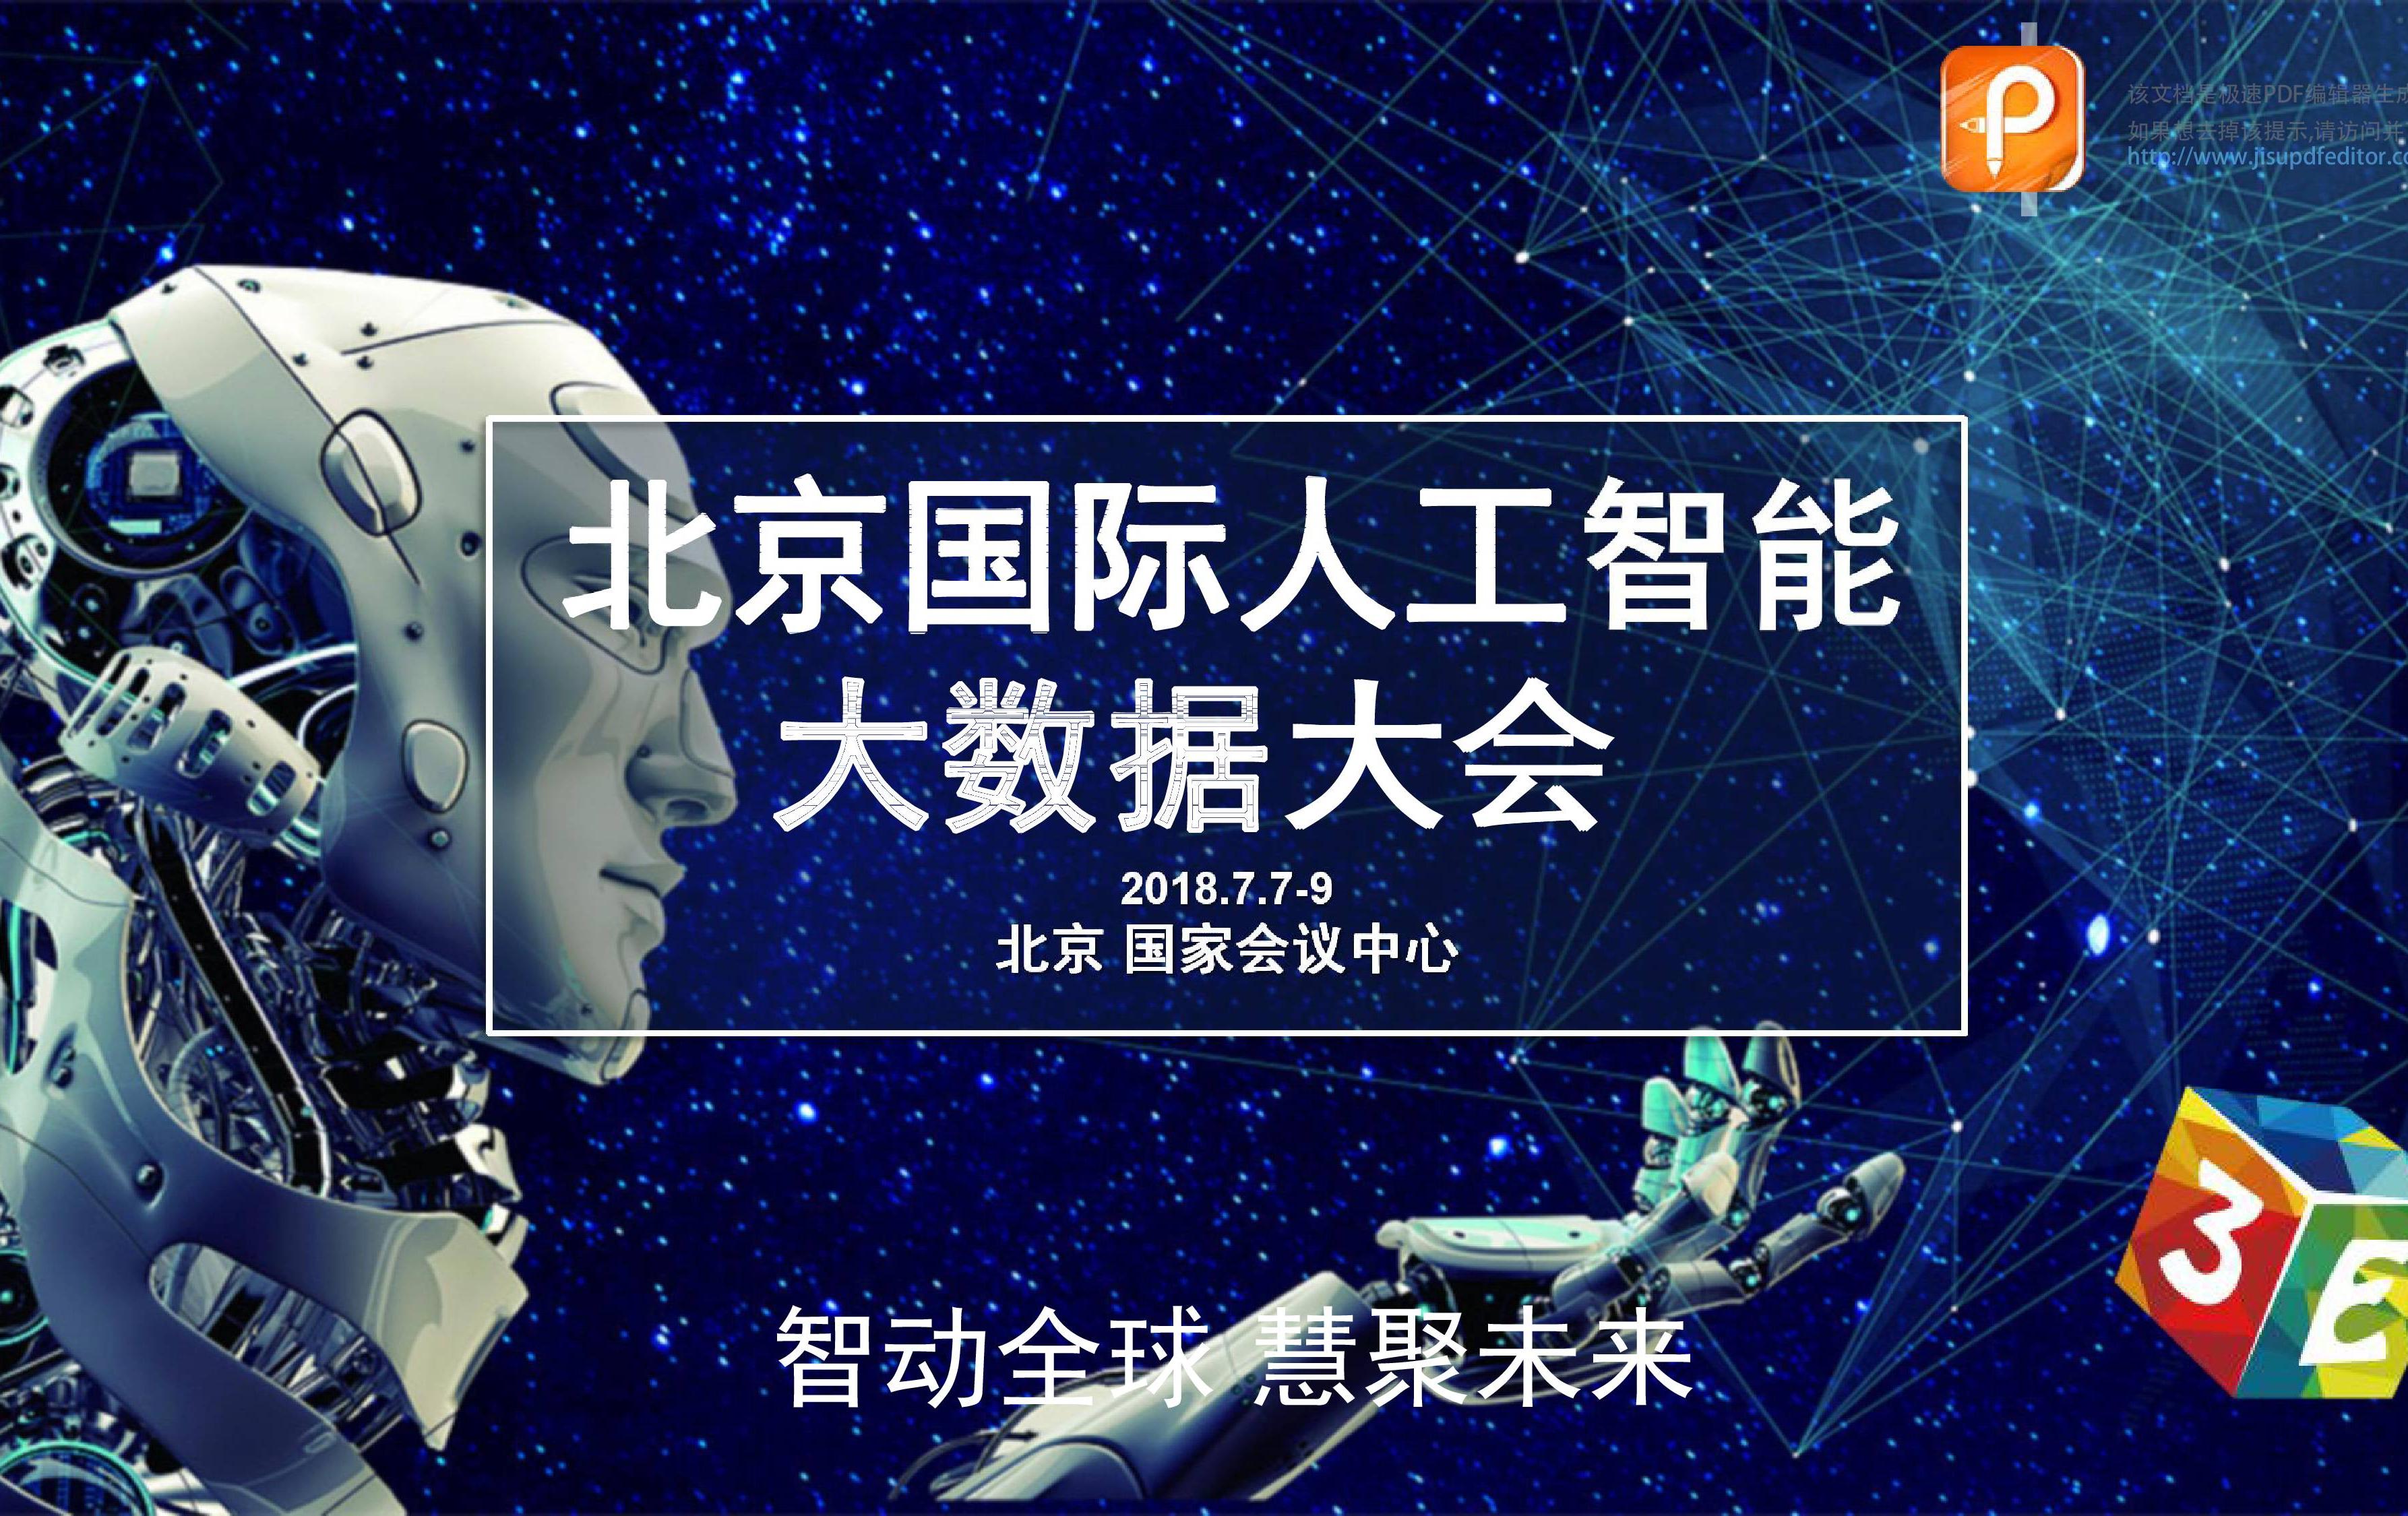 北京國際人工智能大數據大會